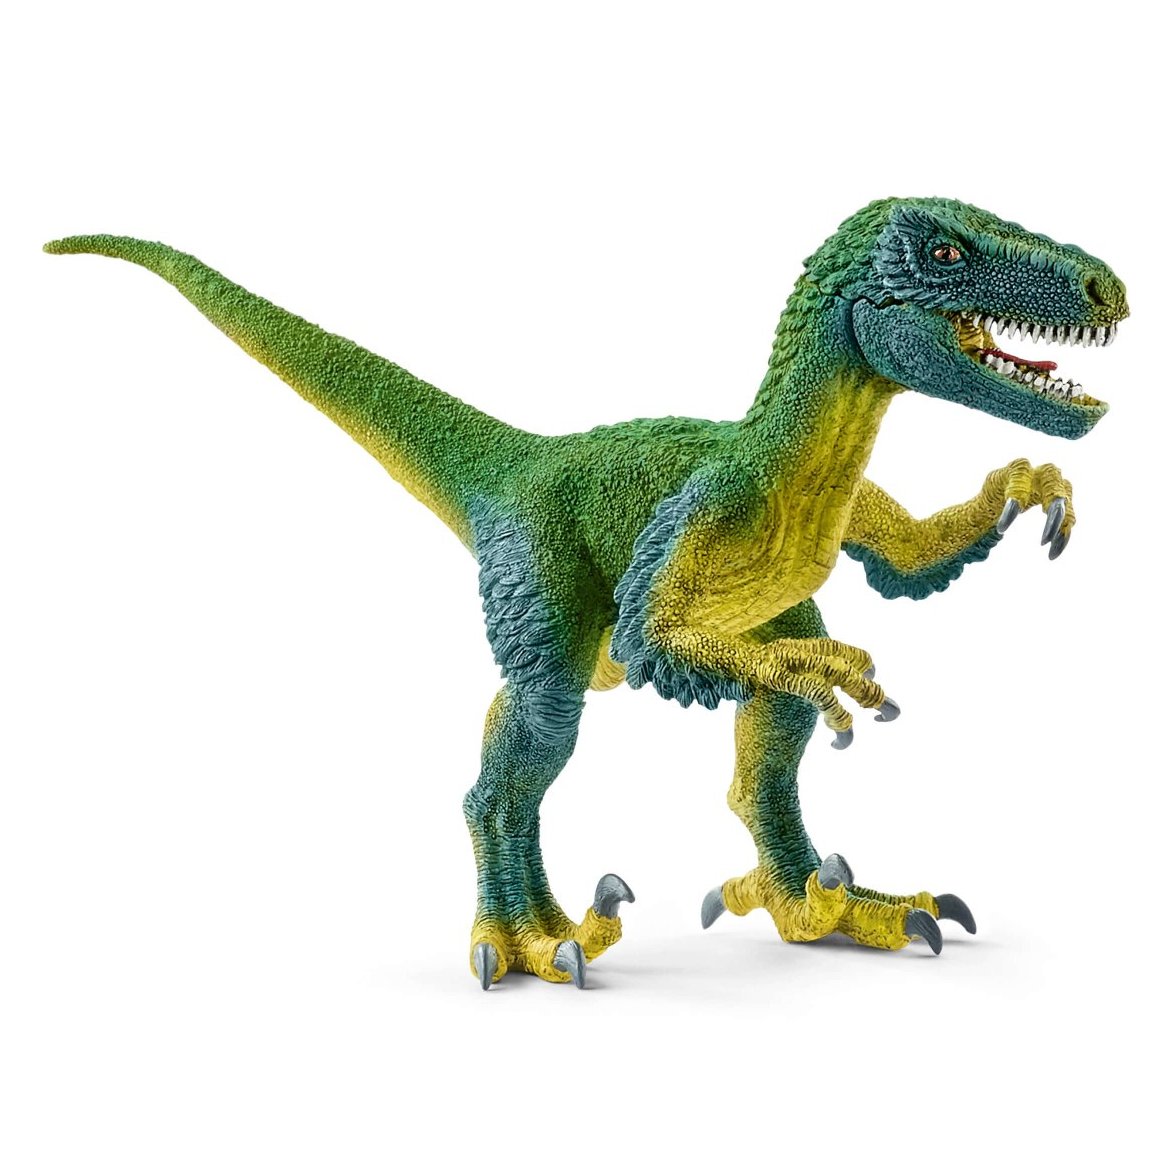 Dinozaur Velociraptor, Schleich 14585